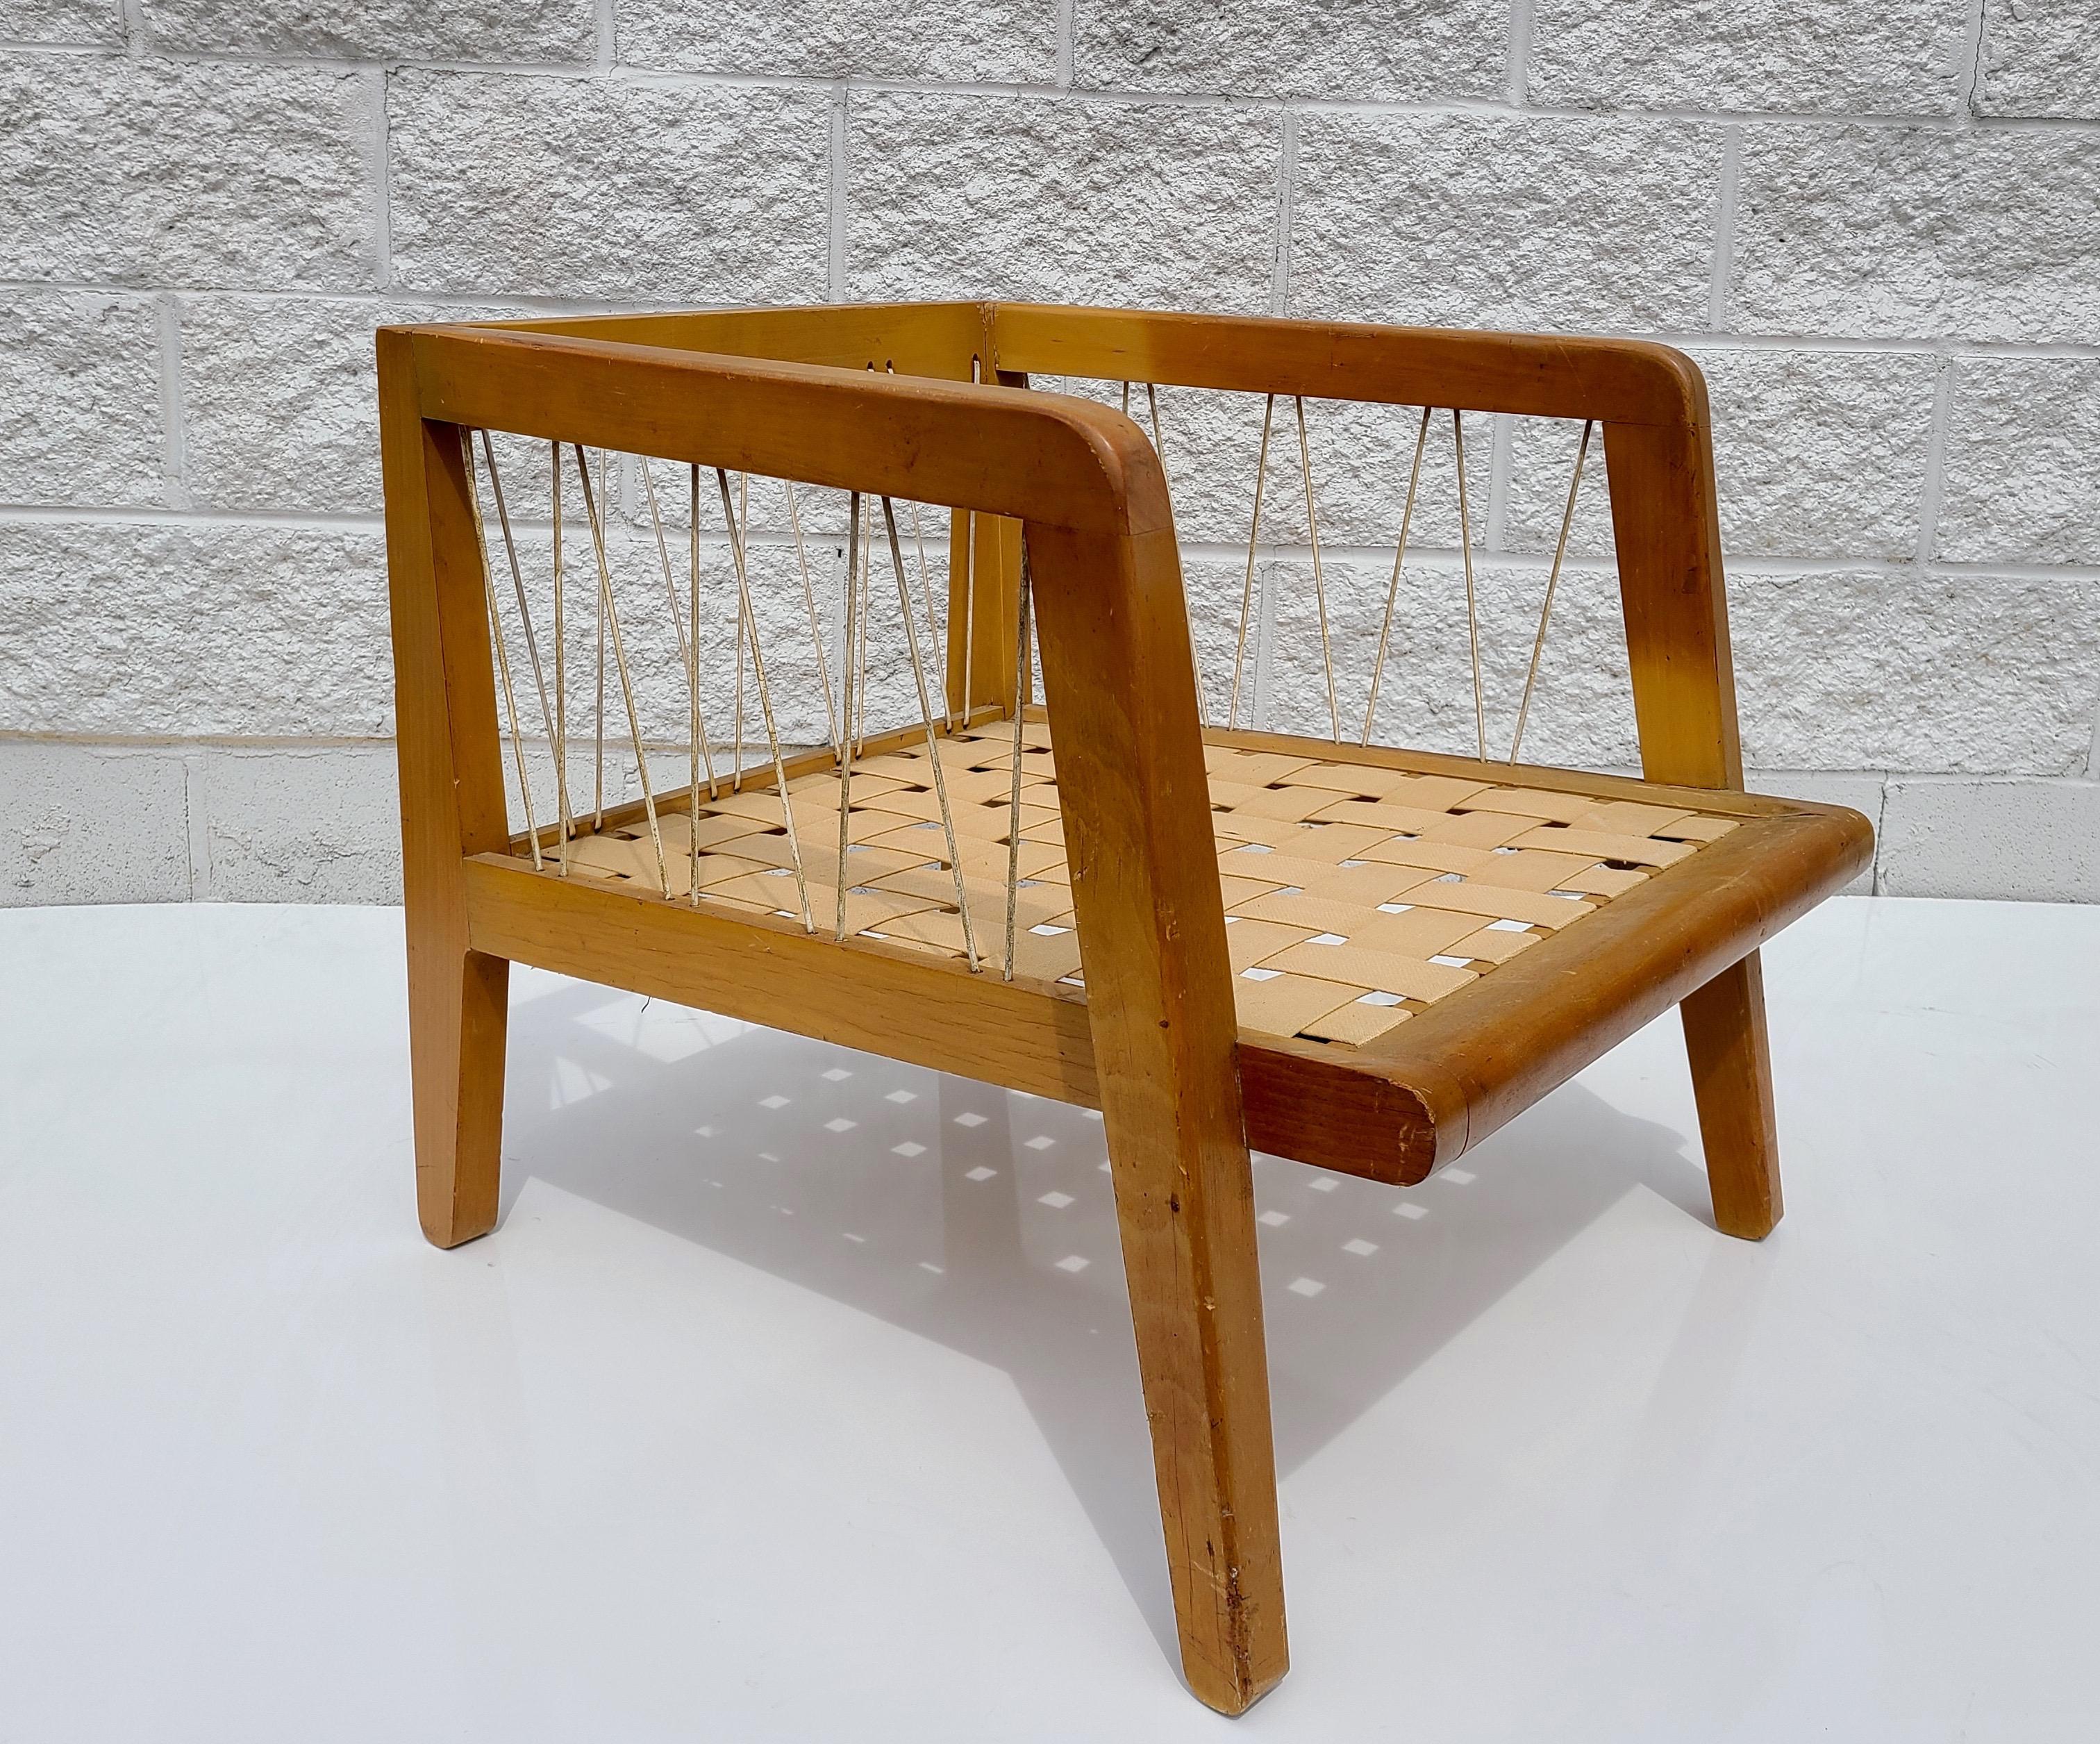 Bitte senden Sie uns eine Nachricht für ein kostengünstiges Angebot für den Versand an Ihren Standort.

Lounge Chair Entworfen von Edward Wormley für Drexel Precedent Series.
Unrestauriert.